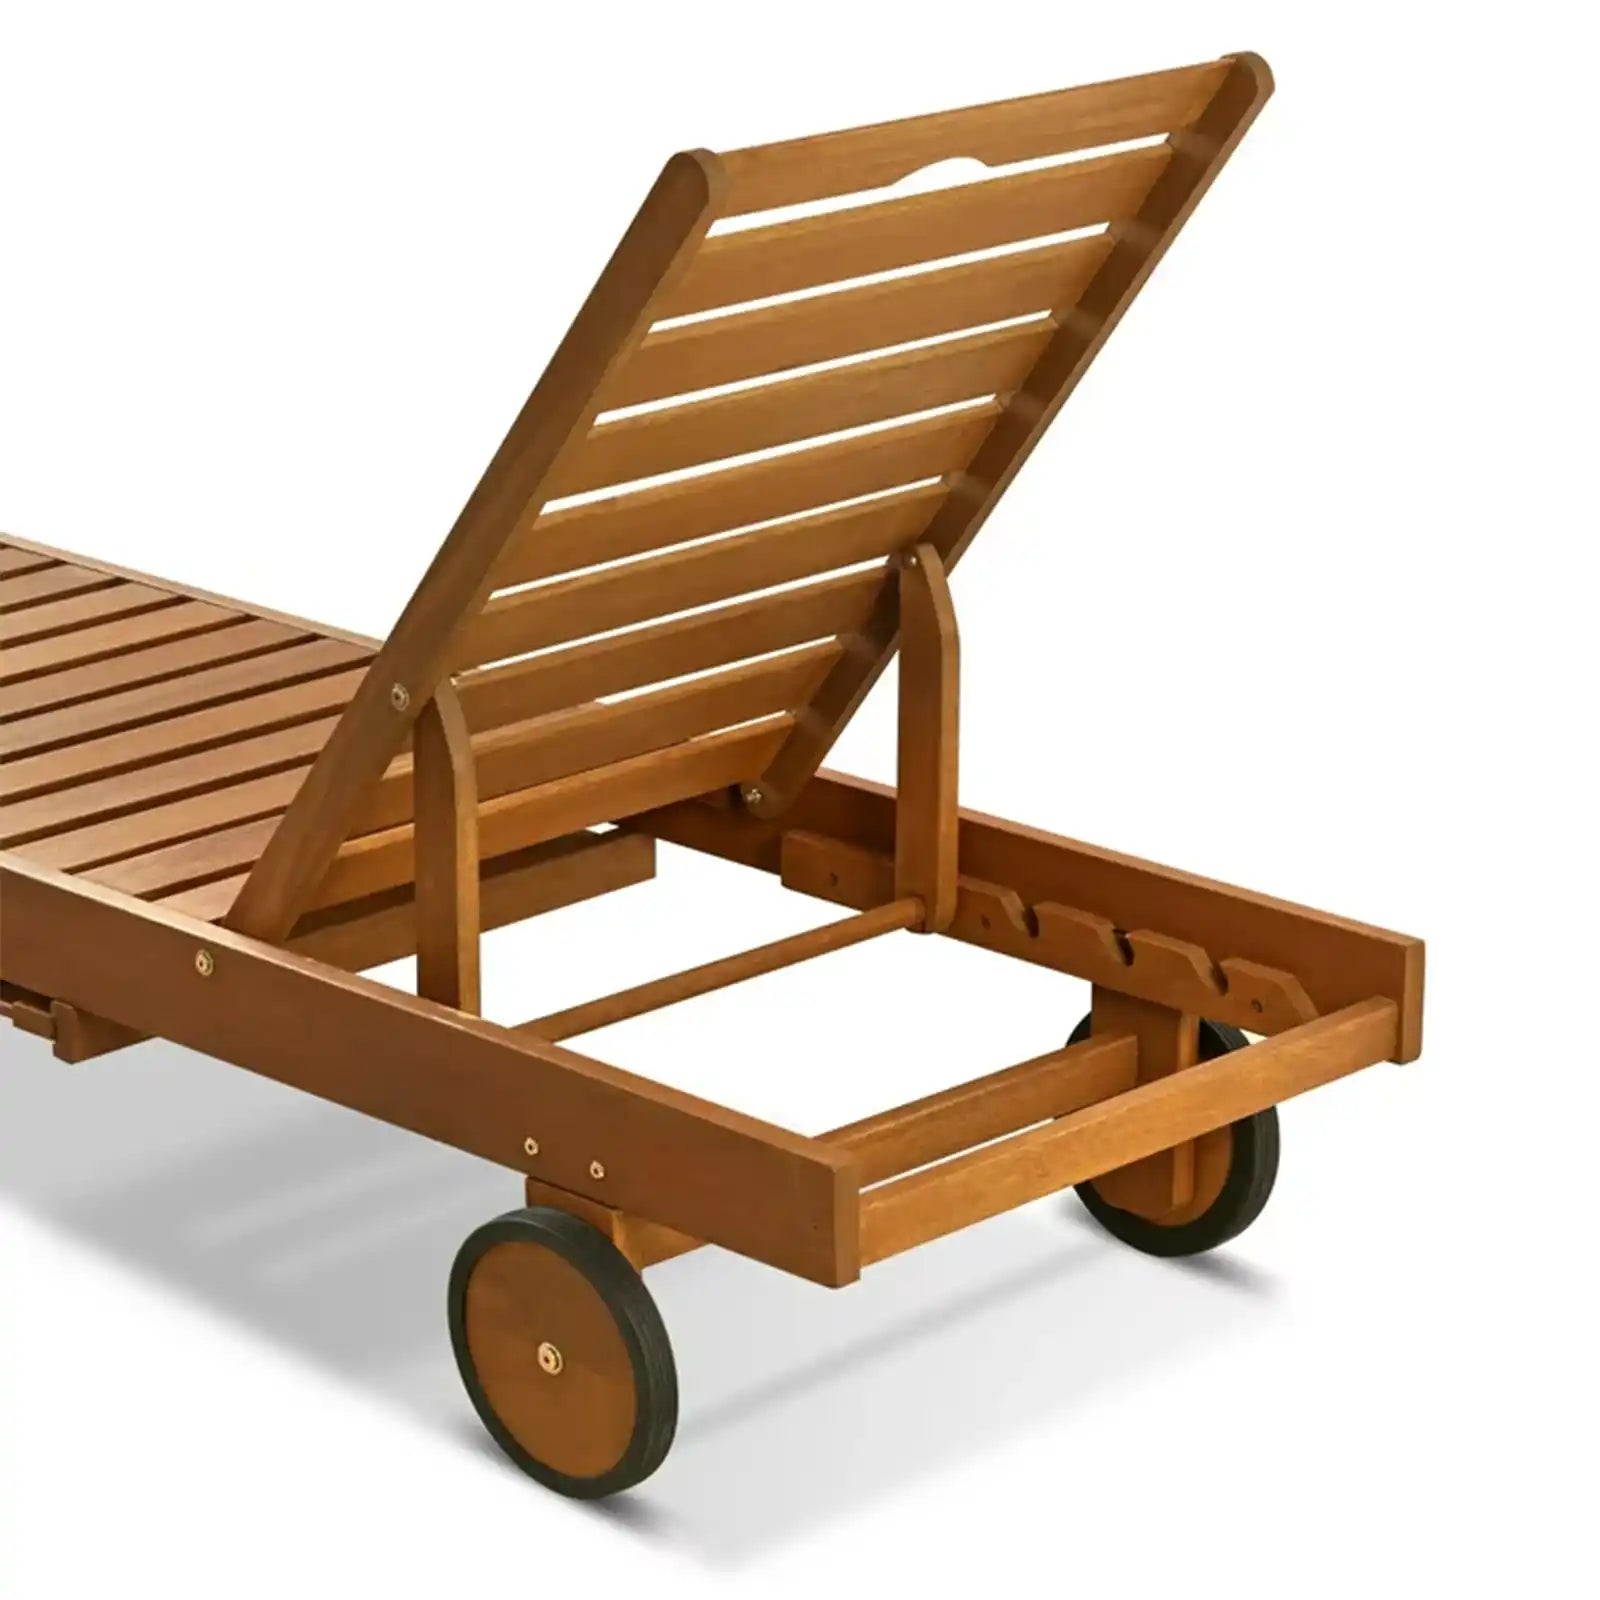 Chaise lounge al aire libre de madera dura 